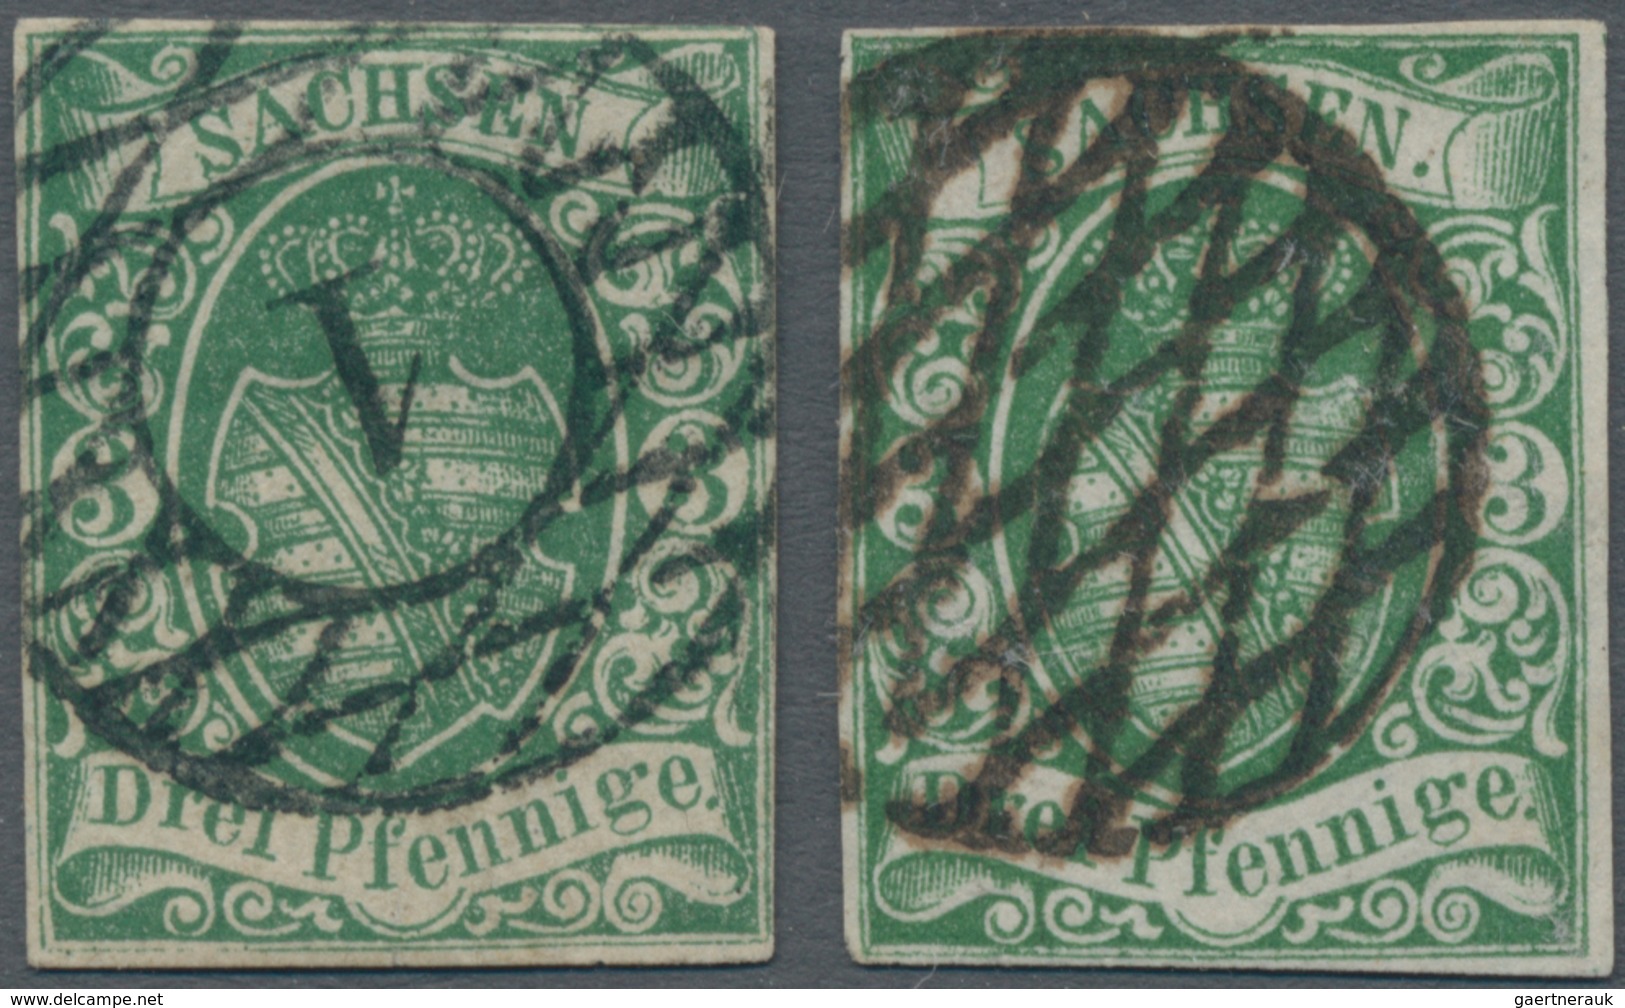 Sachsen - Marken Und Briefe: 1852/1860 (ca.), 3 Pfge. Grün,Lot Von Zwei Gestempelten Einzelmarken (e - Saxe